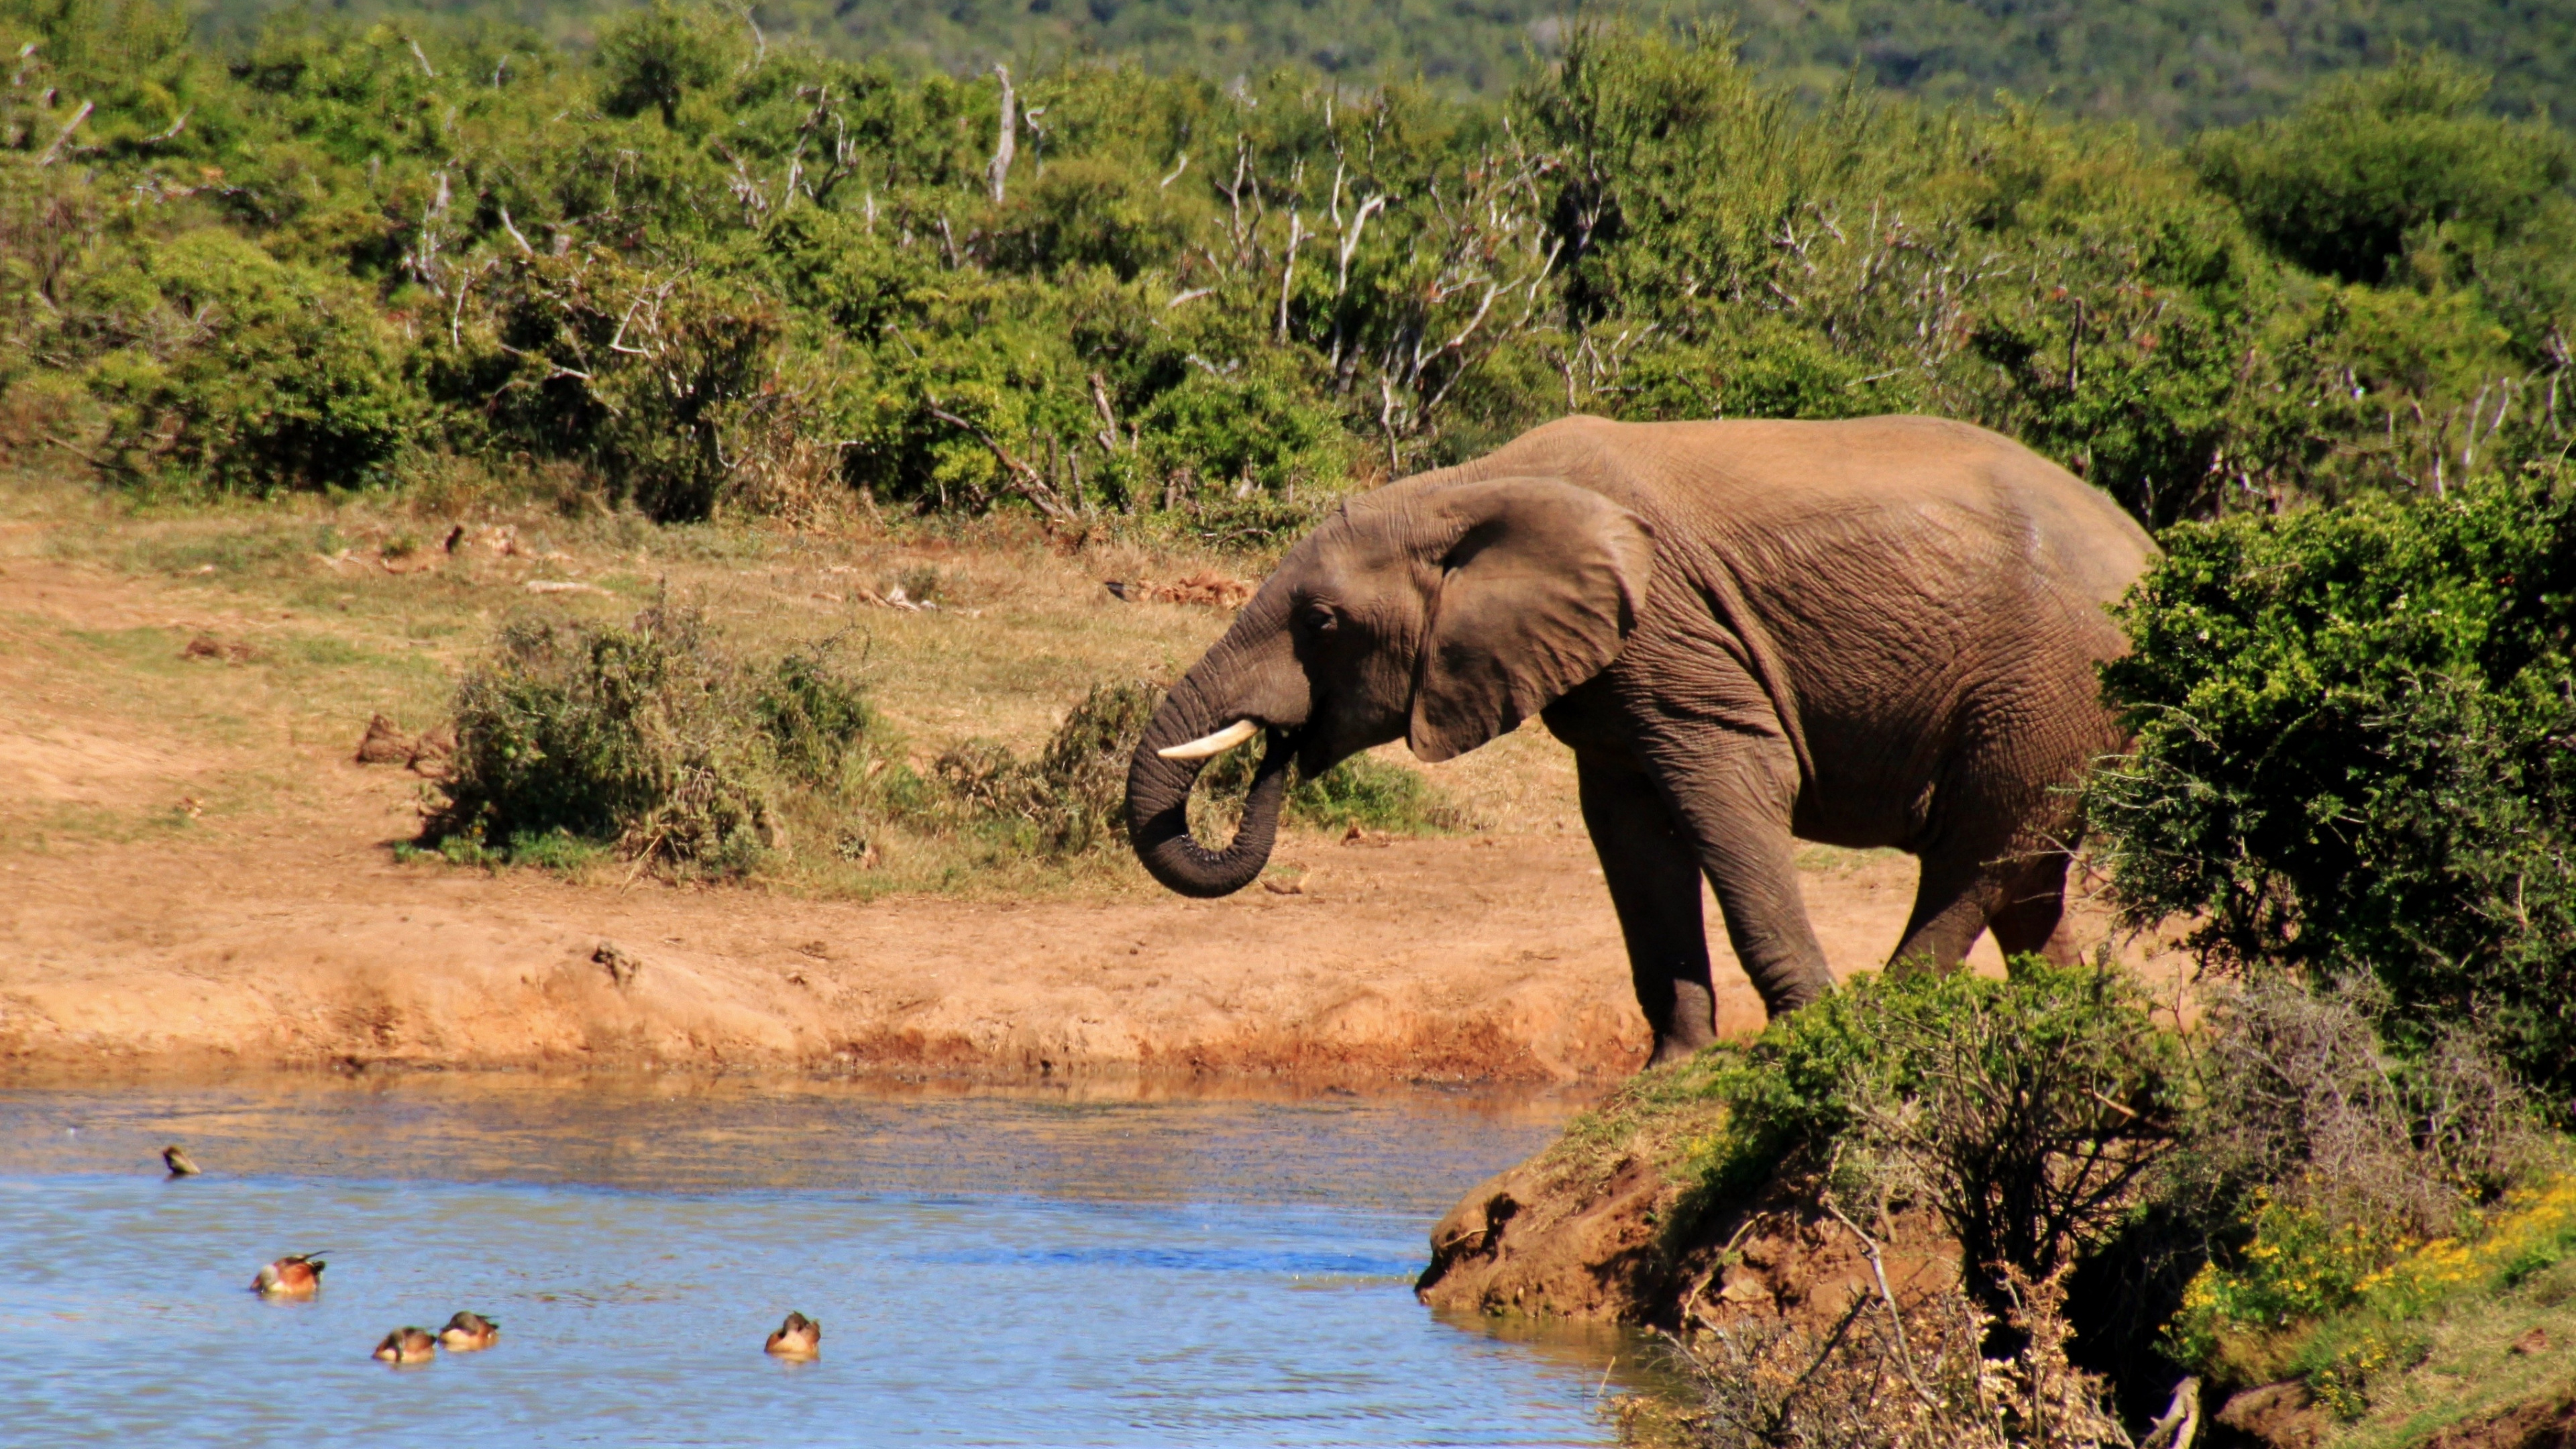 野生动物, 大象和猛犸象, 陆地动物, 非洲象, 印度大象 壁纸 3840x2160 允许